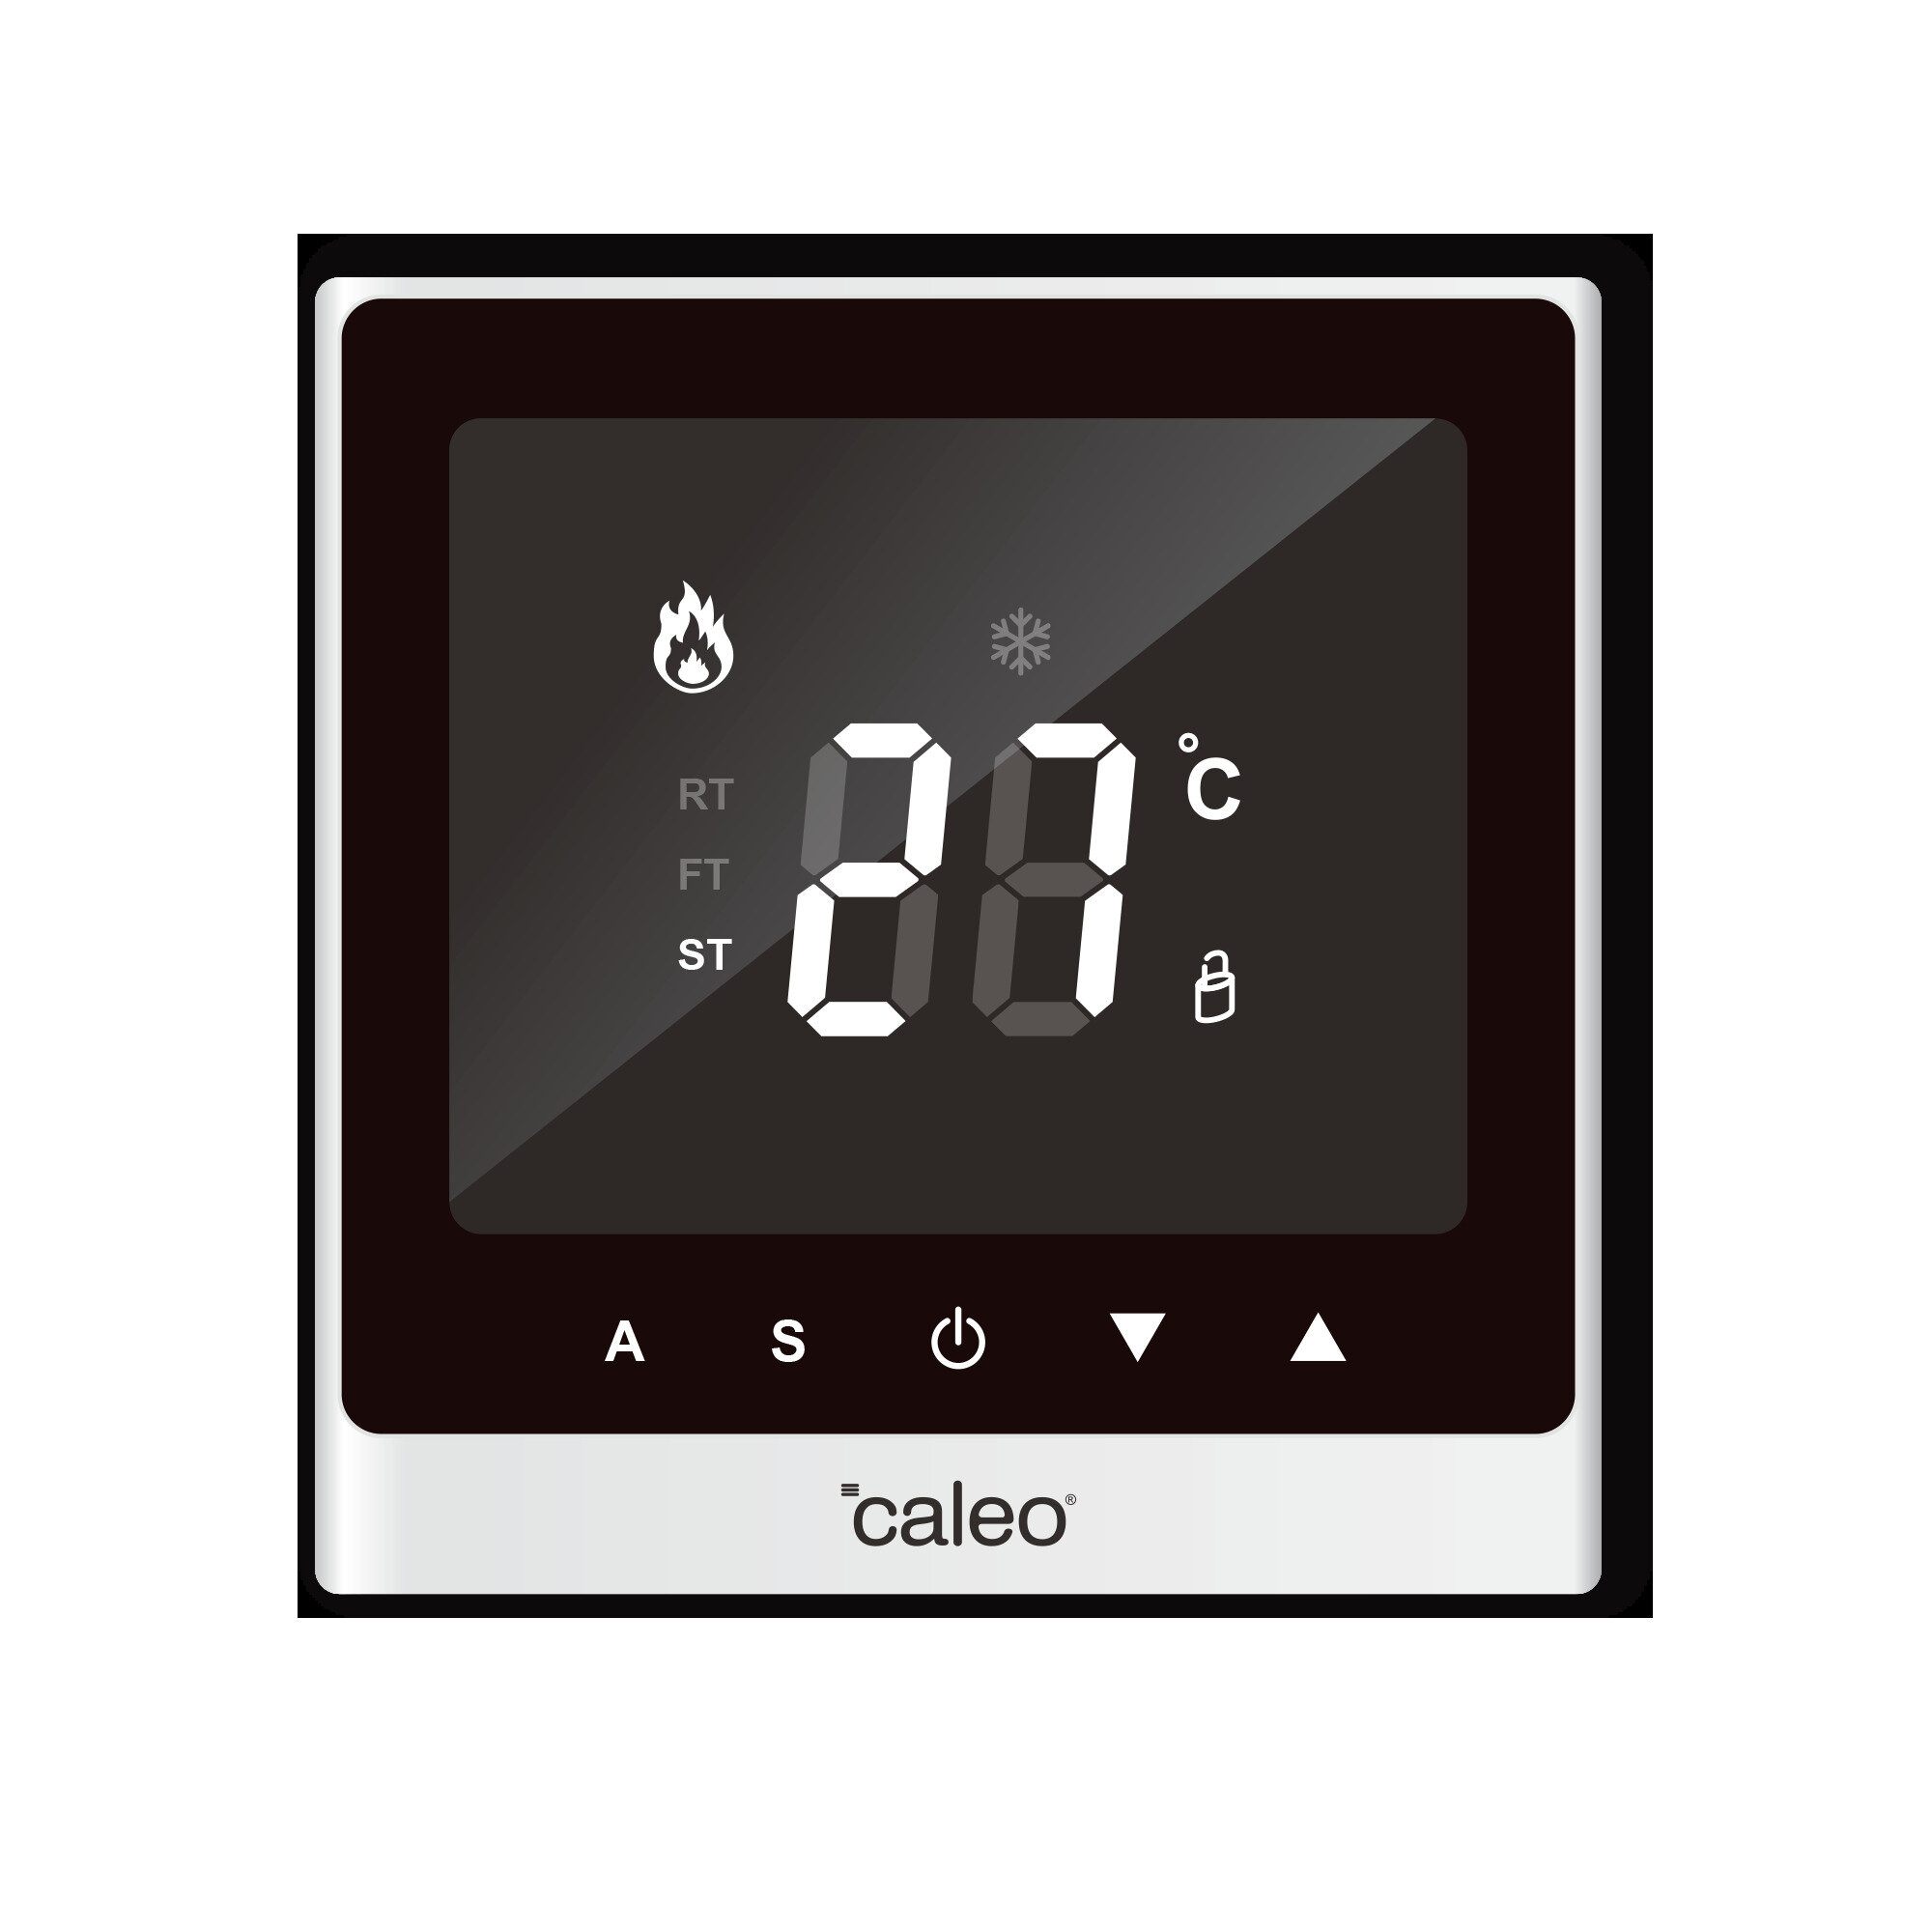 Терморегулятор/термостат Caleo С732 встраиваемый цифровой, 3,5 кВт, белый